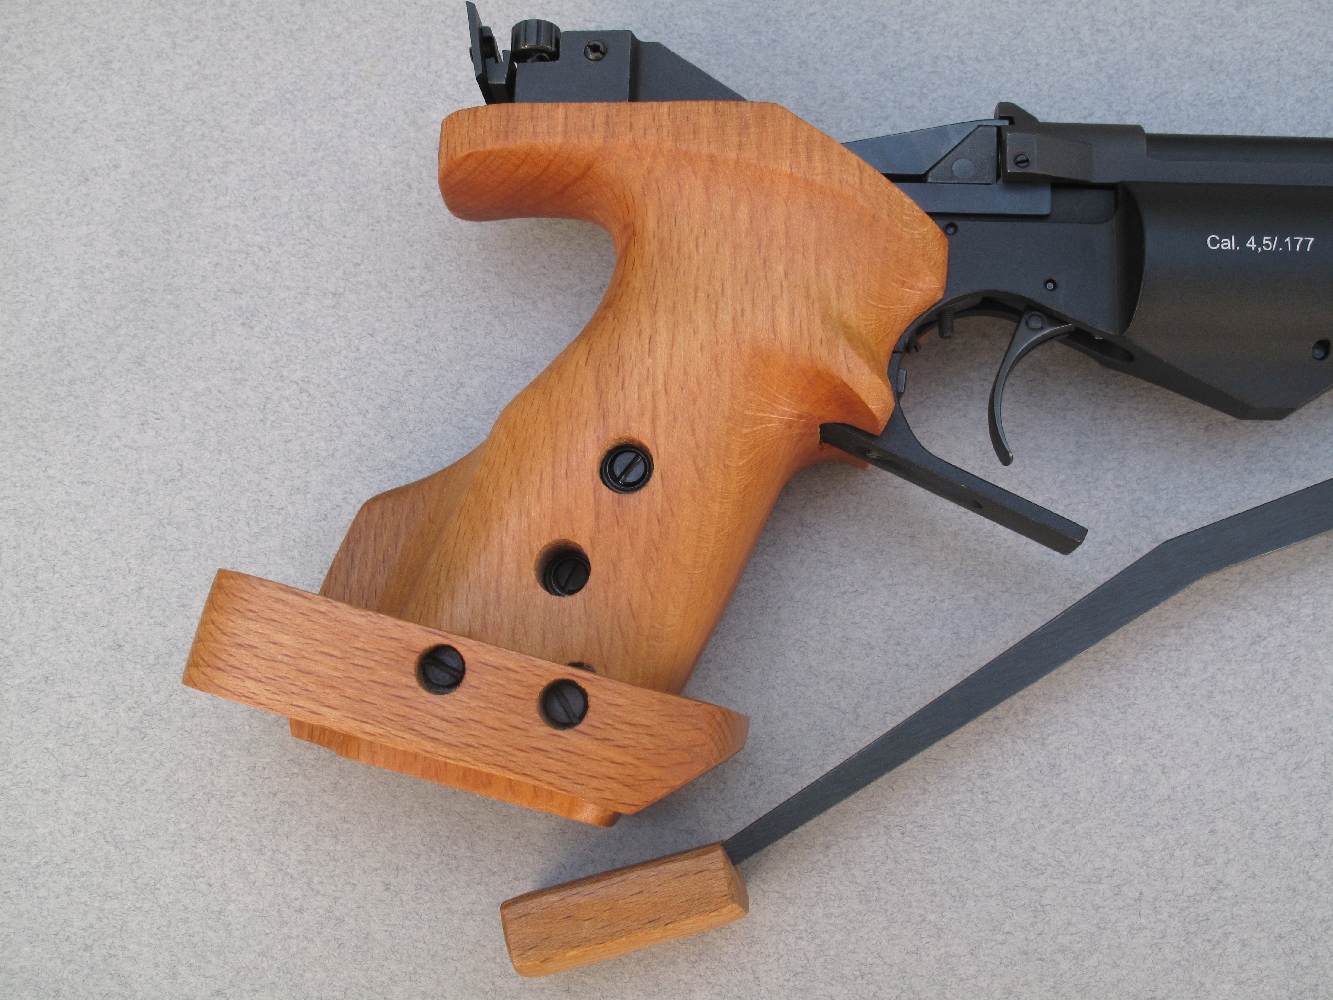 Ce pistolet, qui est muni d’une poignée anatomique avec repose-paume réglable, est proposé en deux versions pour s’adapter aux utilisateurs droitiers et gauchers.